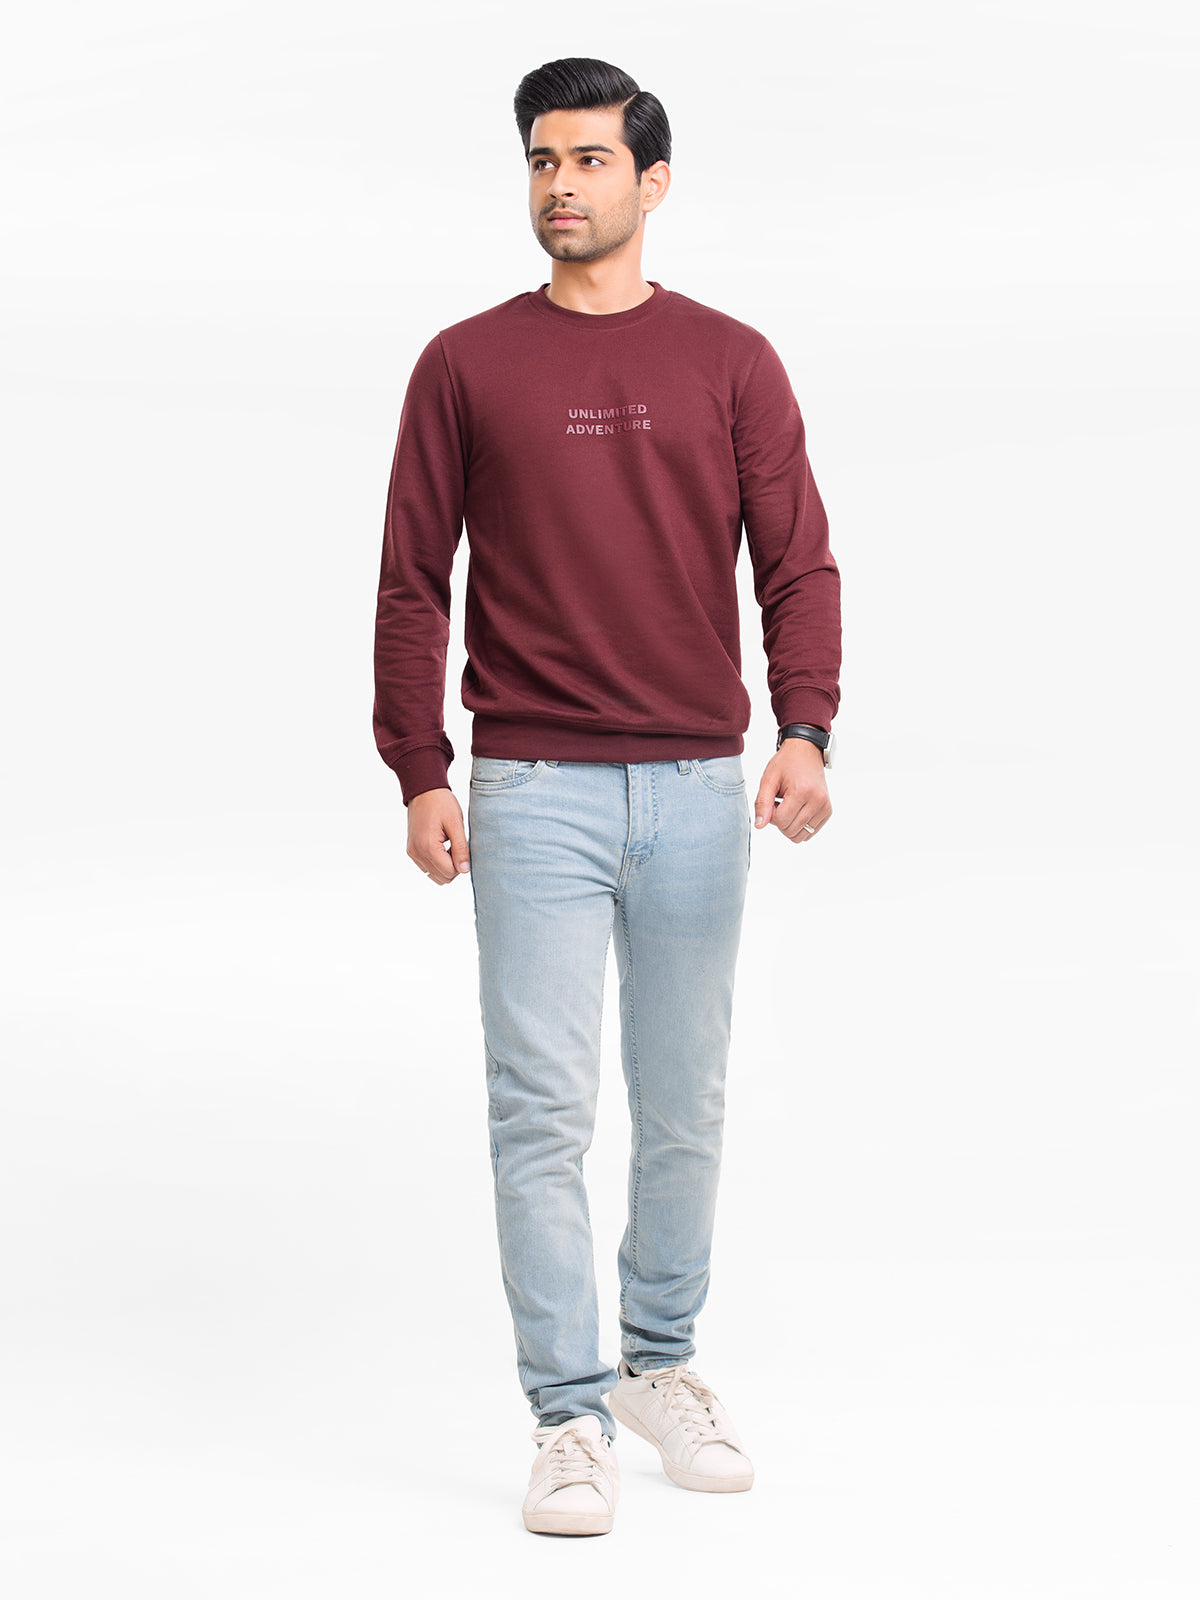 Men's Maroon Sweatshirt - EMTSS23-010